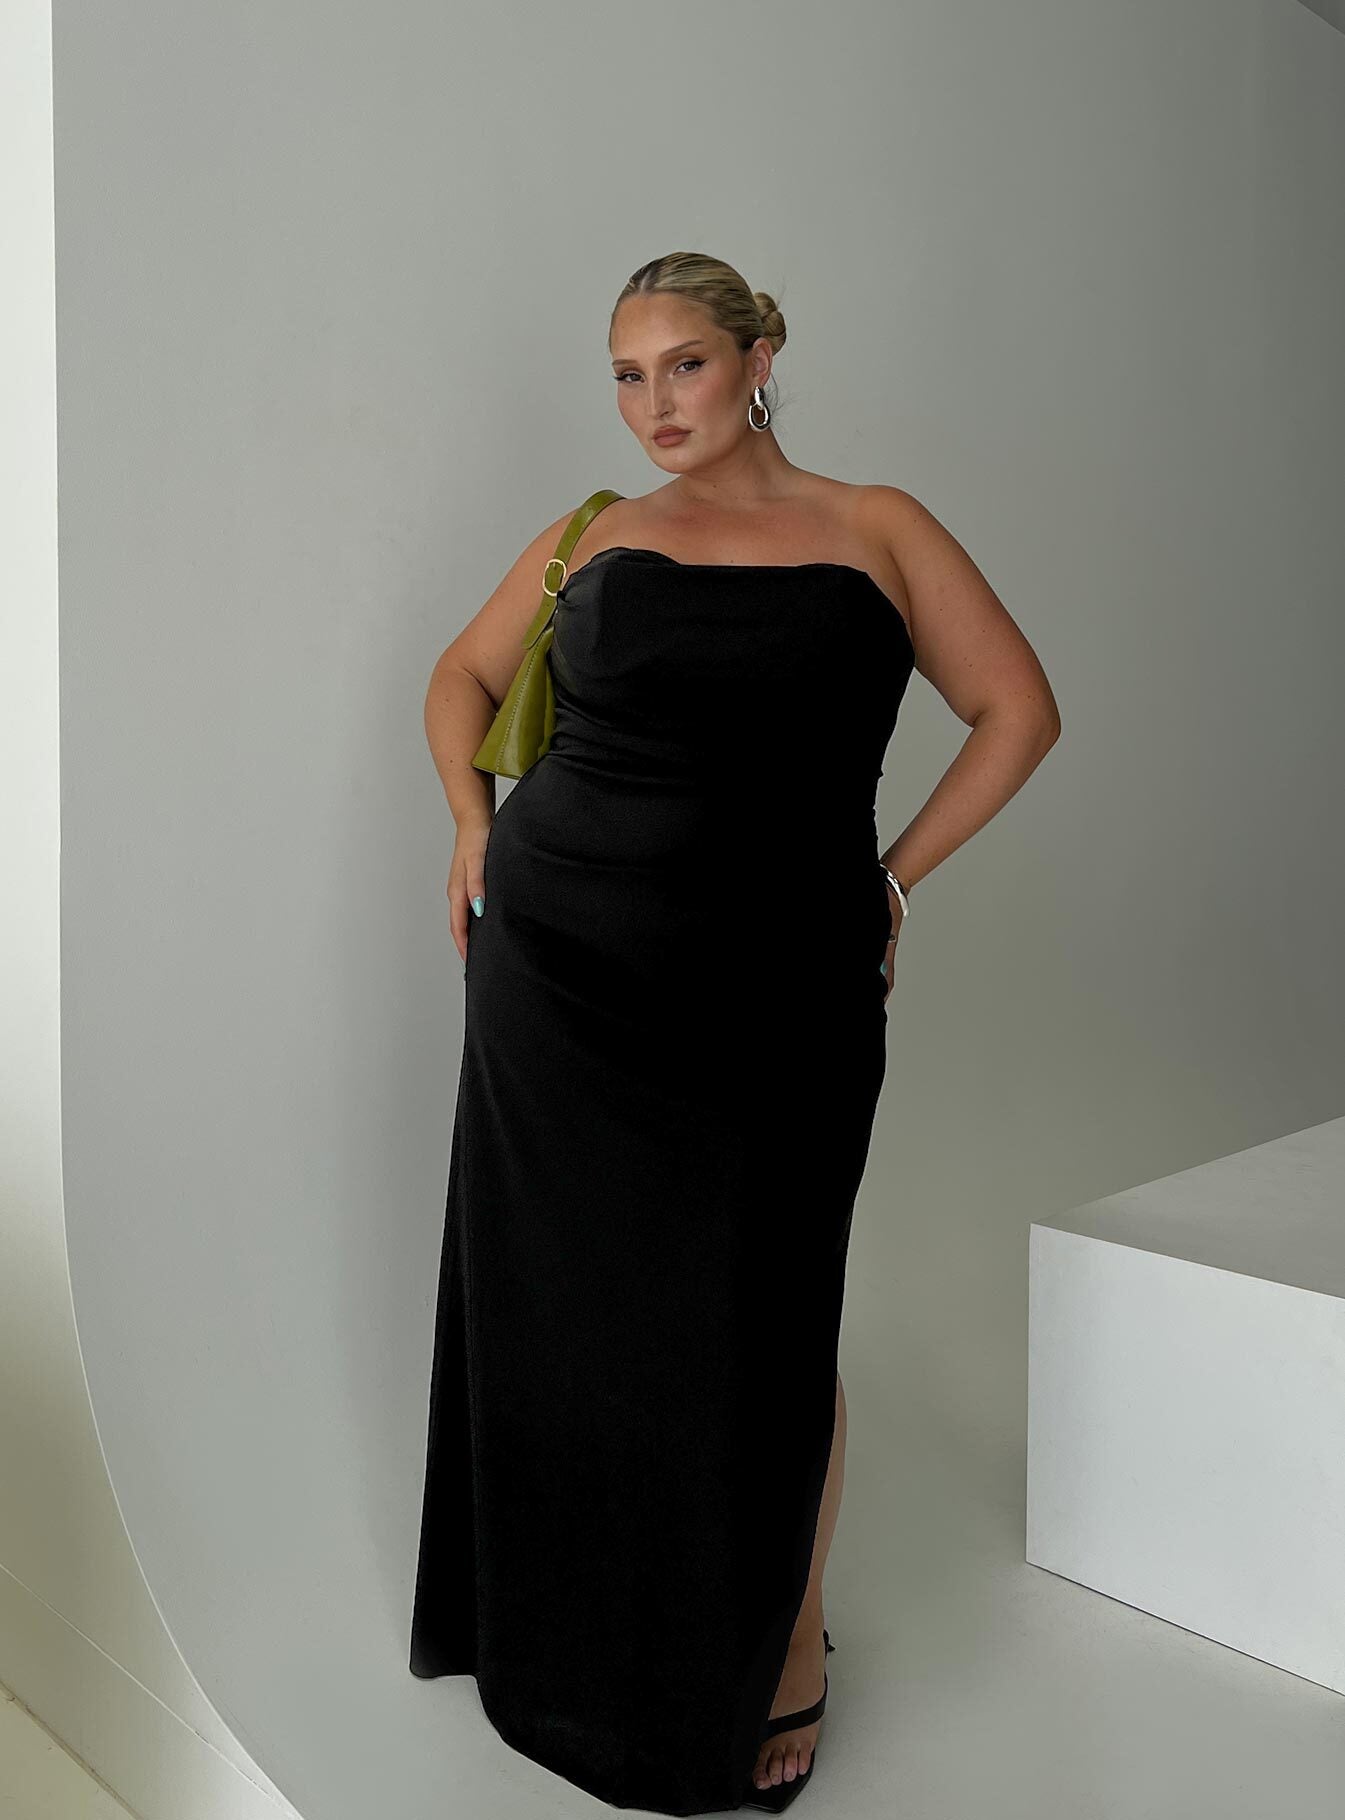 Ferri Strapless Maxi Dress Black Curve